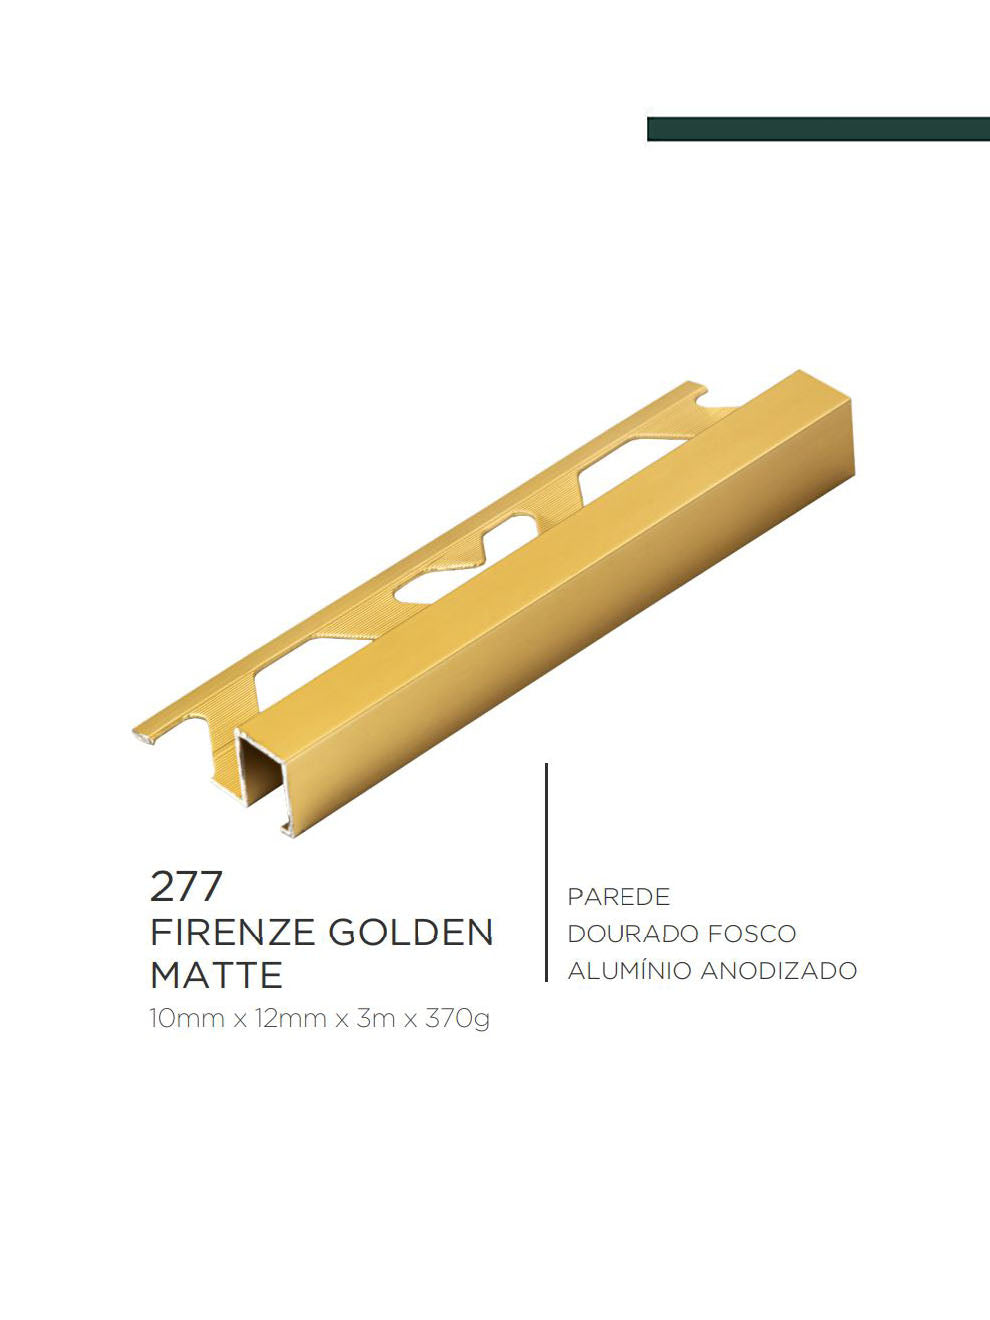 Viscardi - Perfil Firenze Golden Matte 207 Dourado Fosco 10mm x 12mm x 3m - (5 peças)